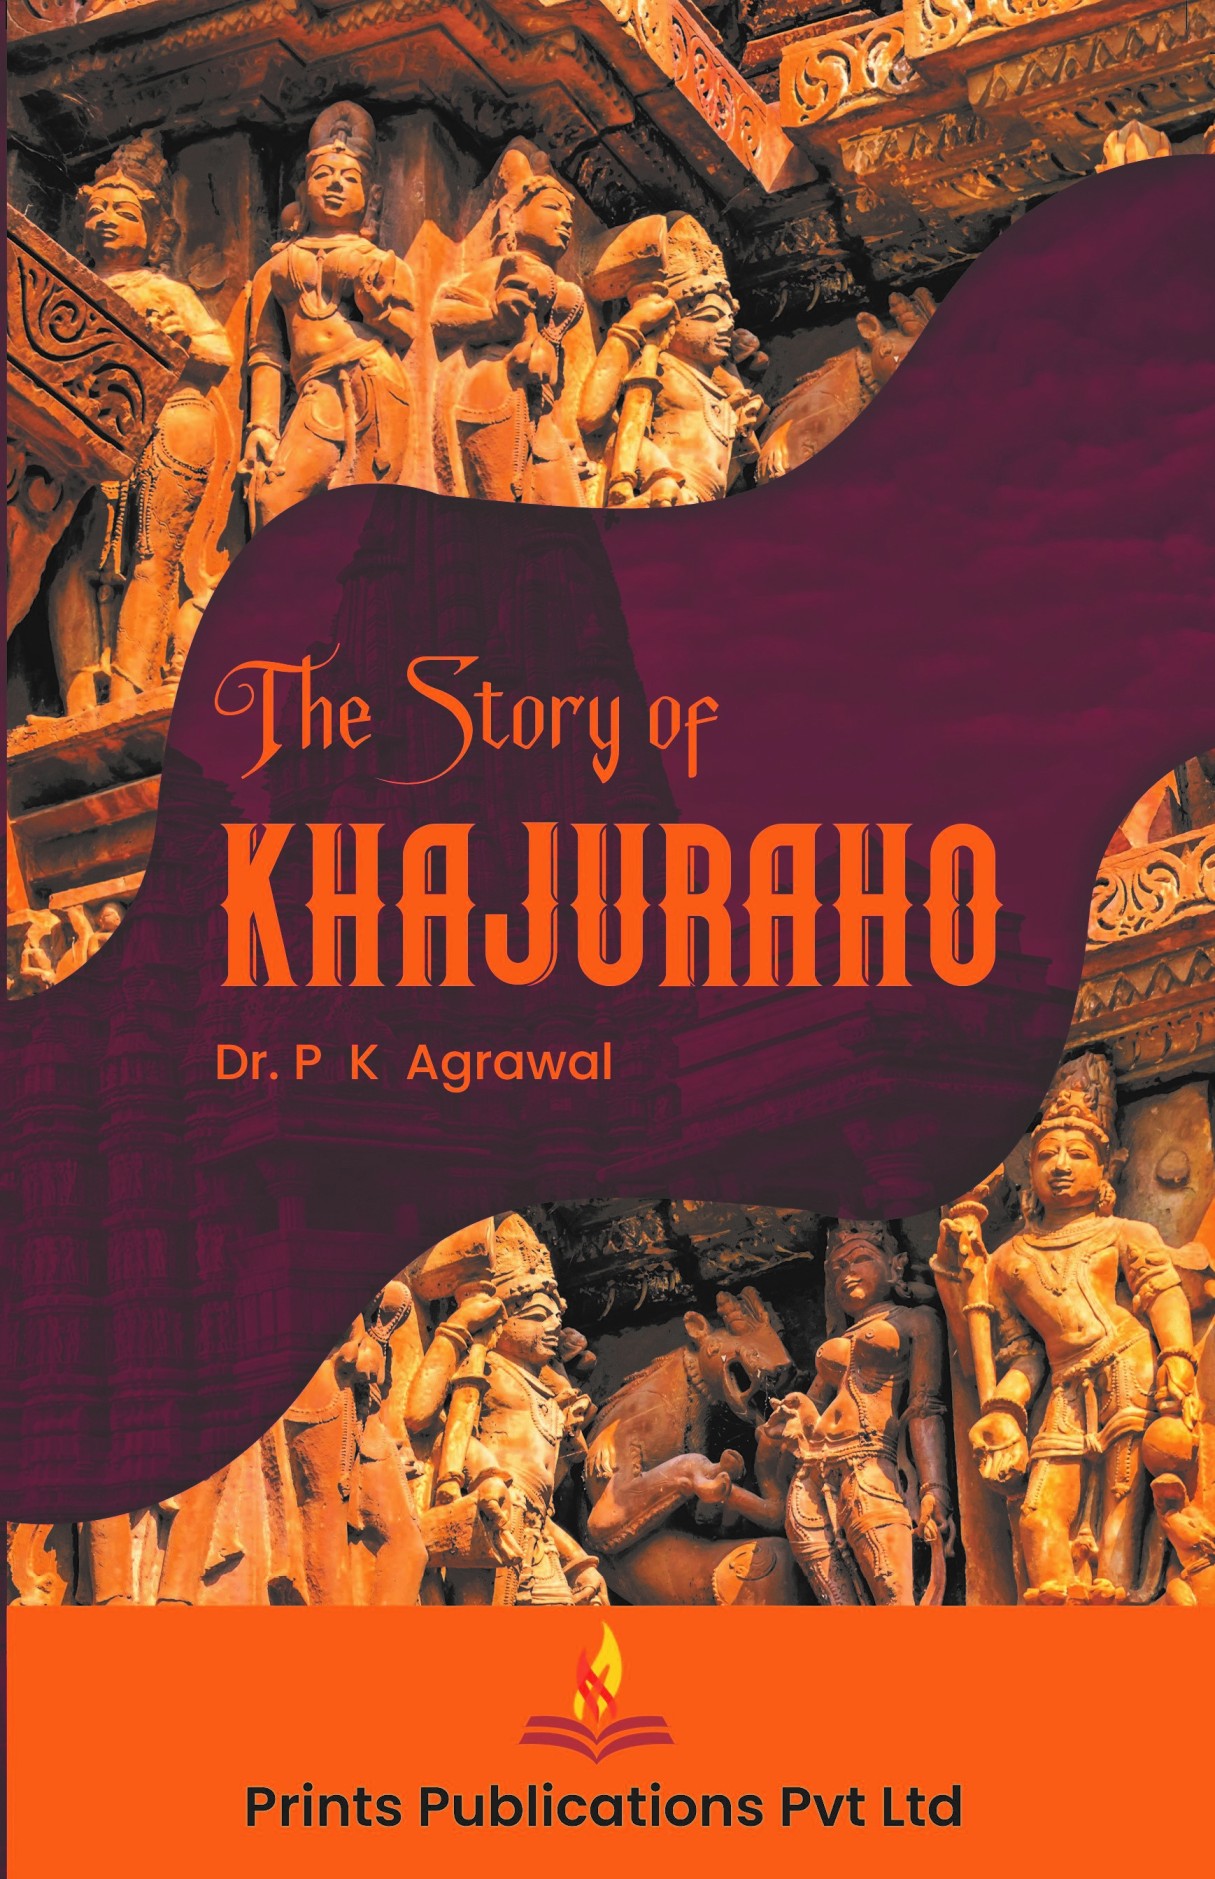 THE STORY OF KHAJURAHO